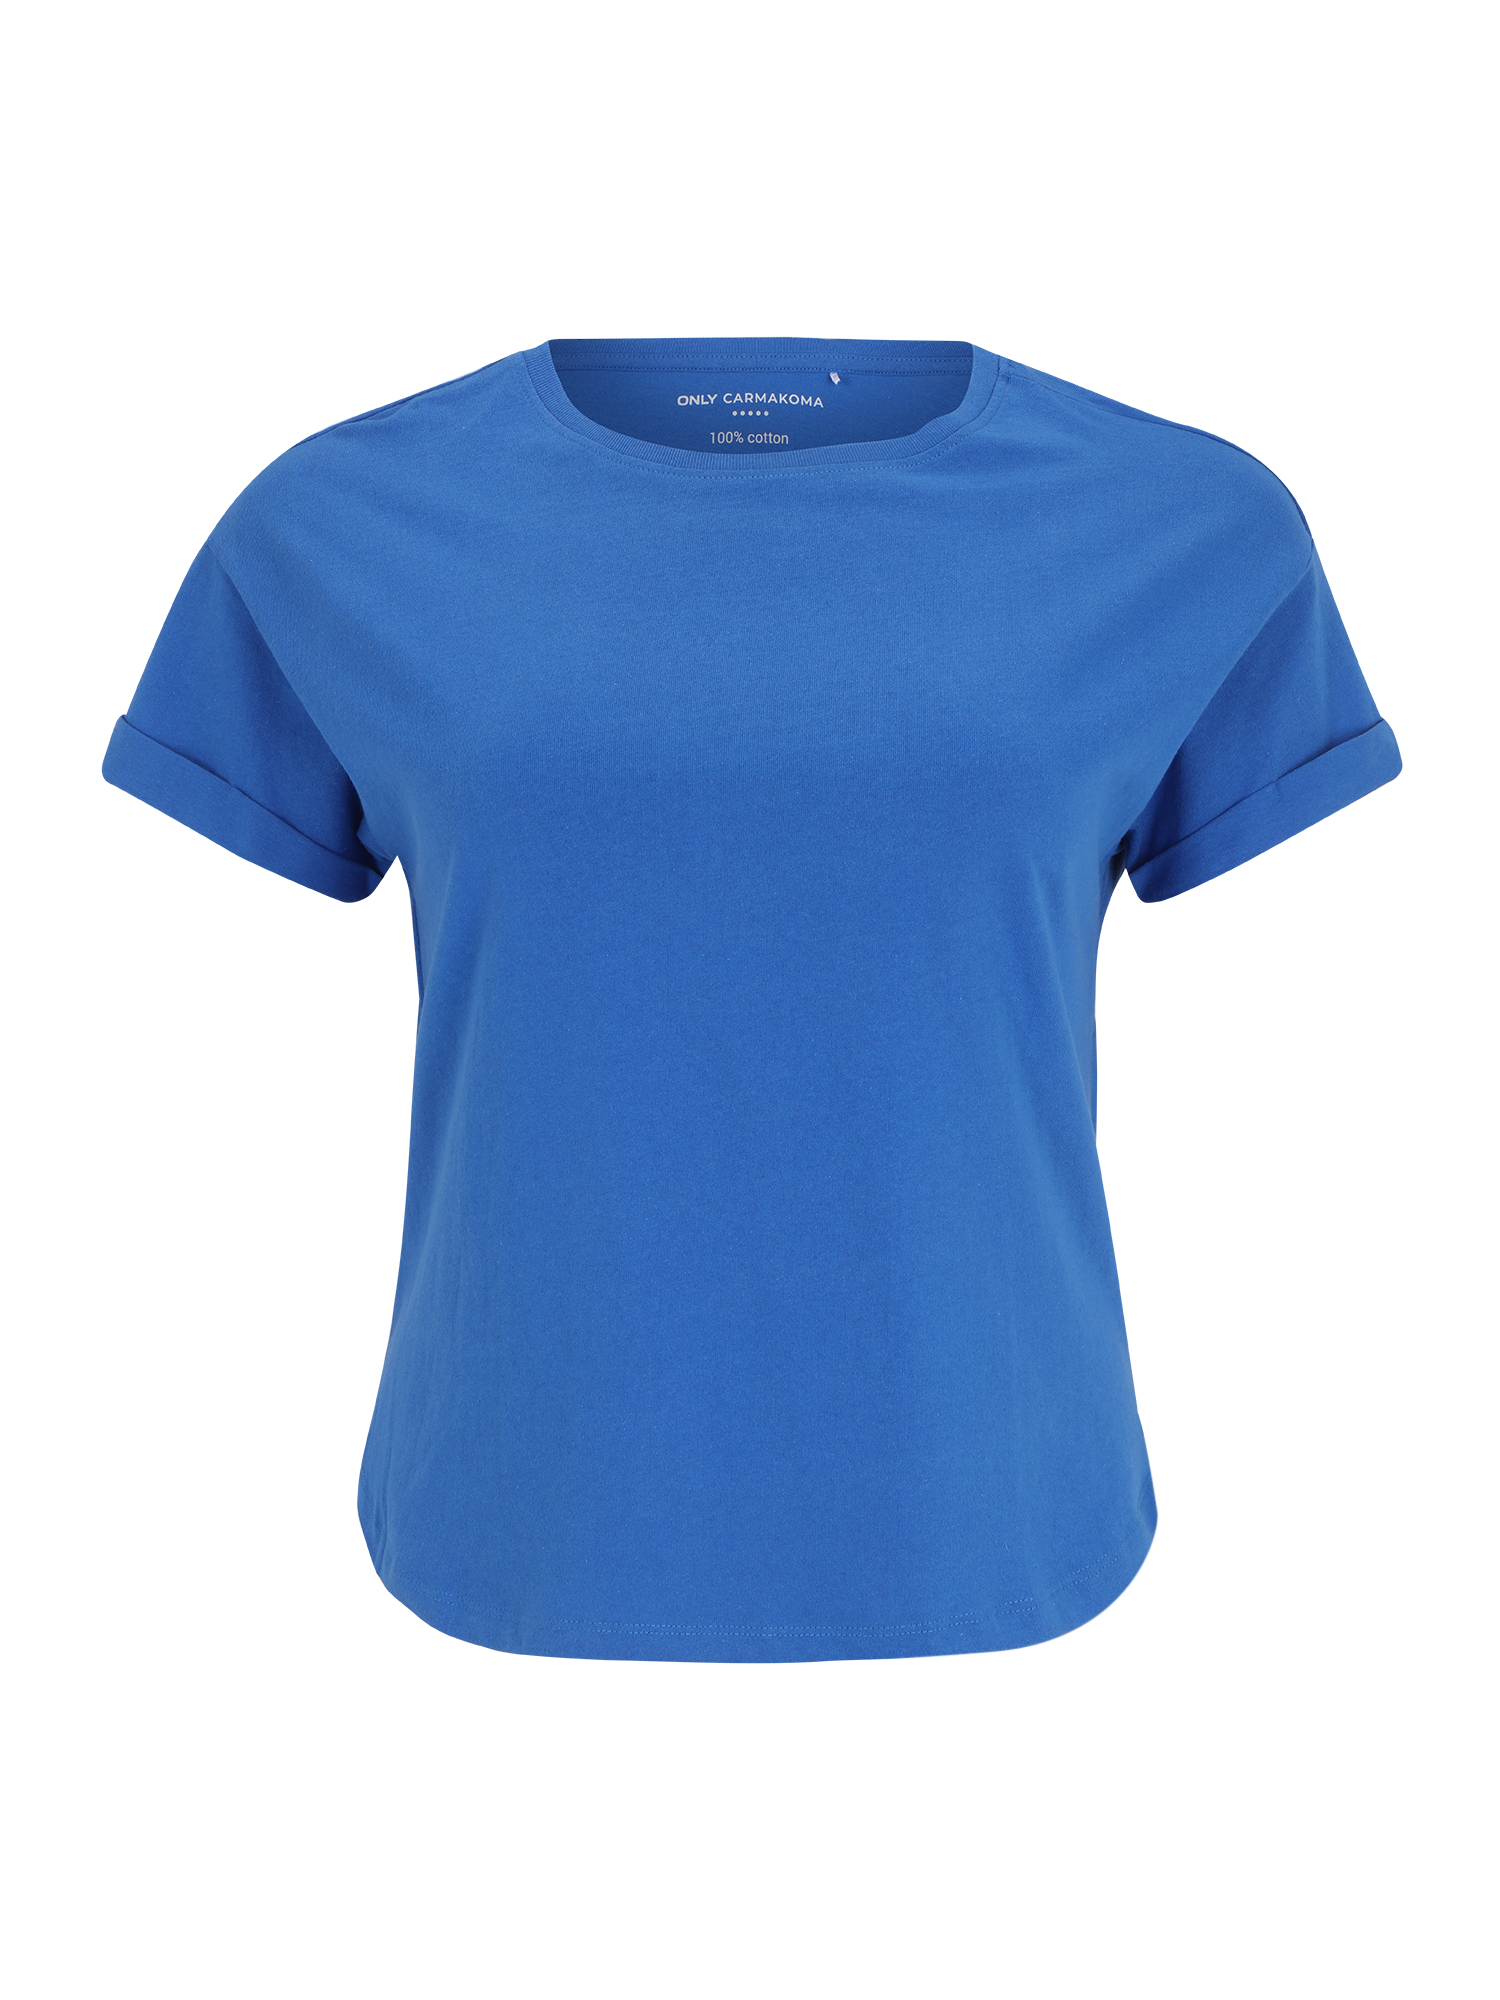 Odzież Kobiety ONLY Carmakoma Koszulka w kolorze Niebieskim 